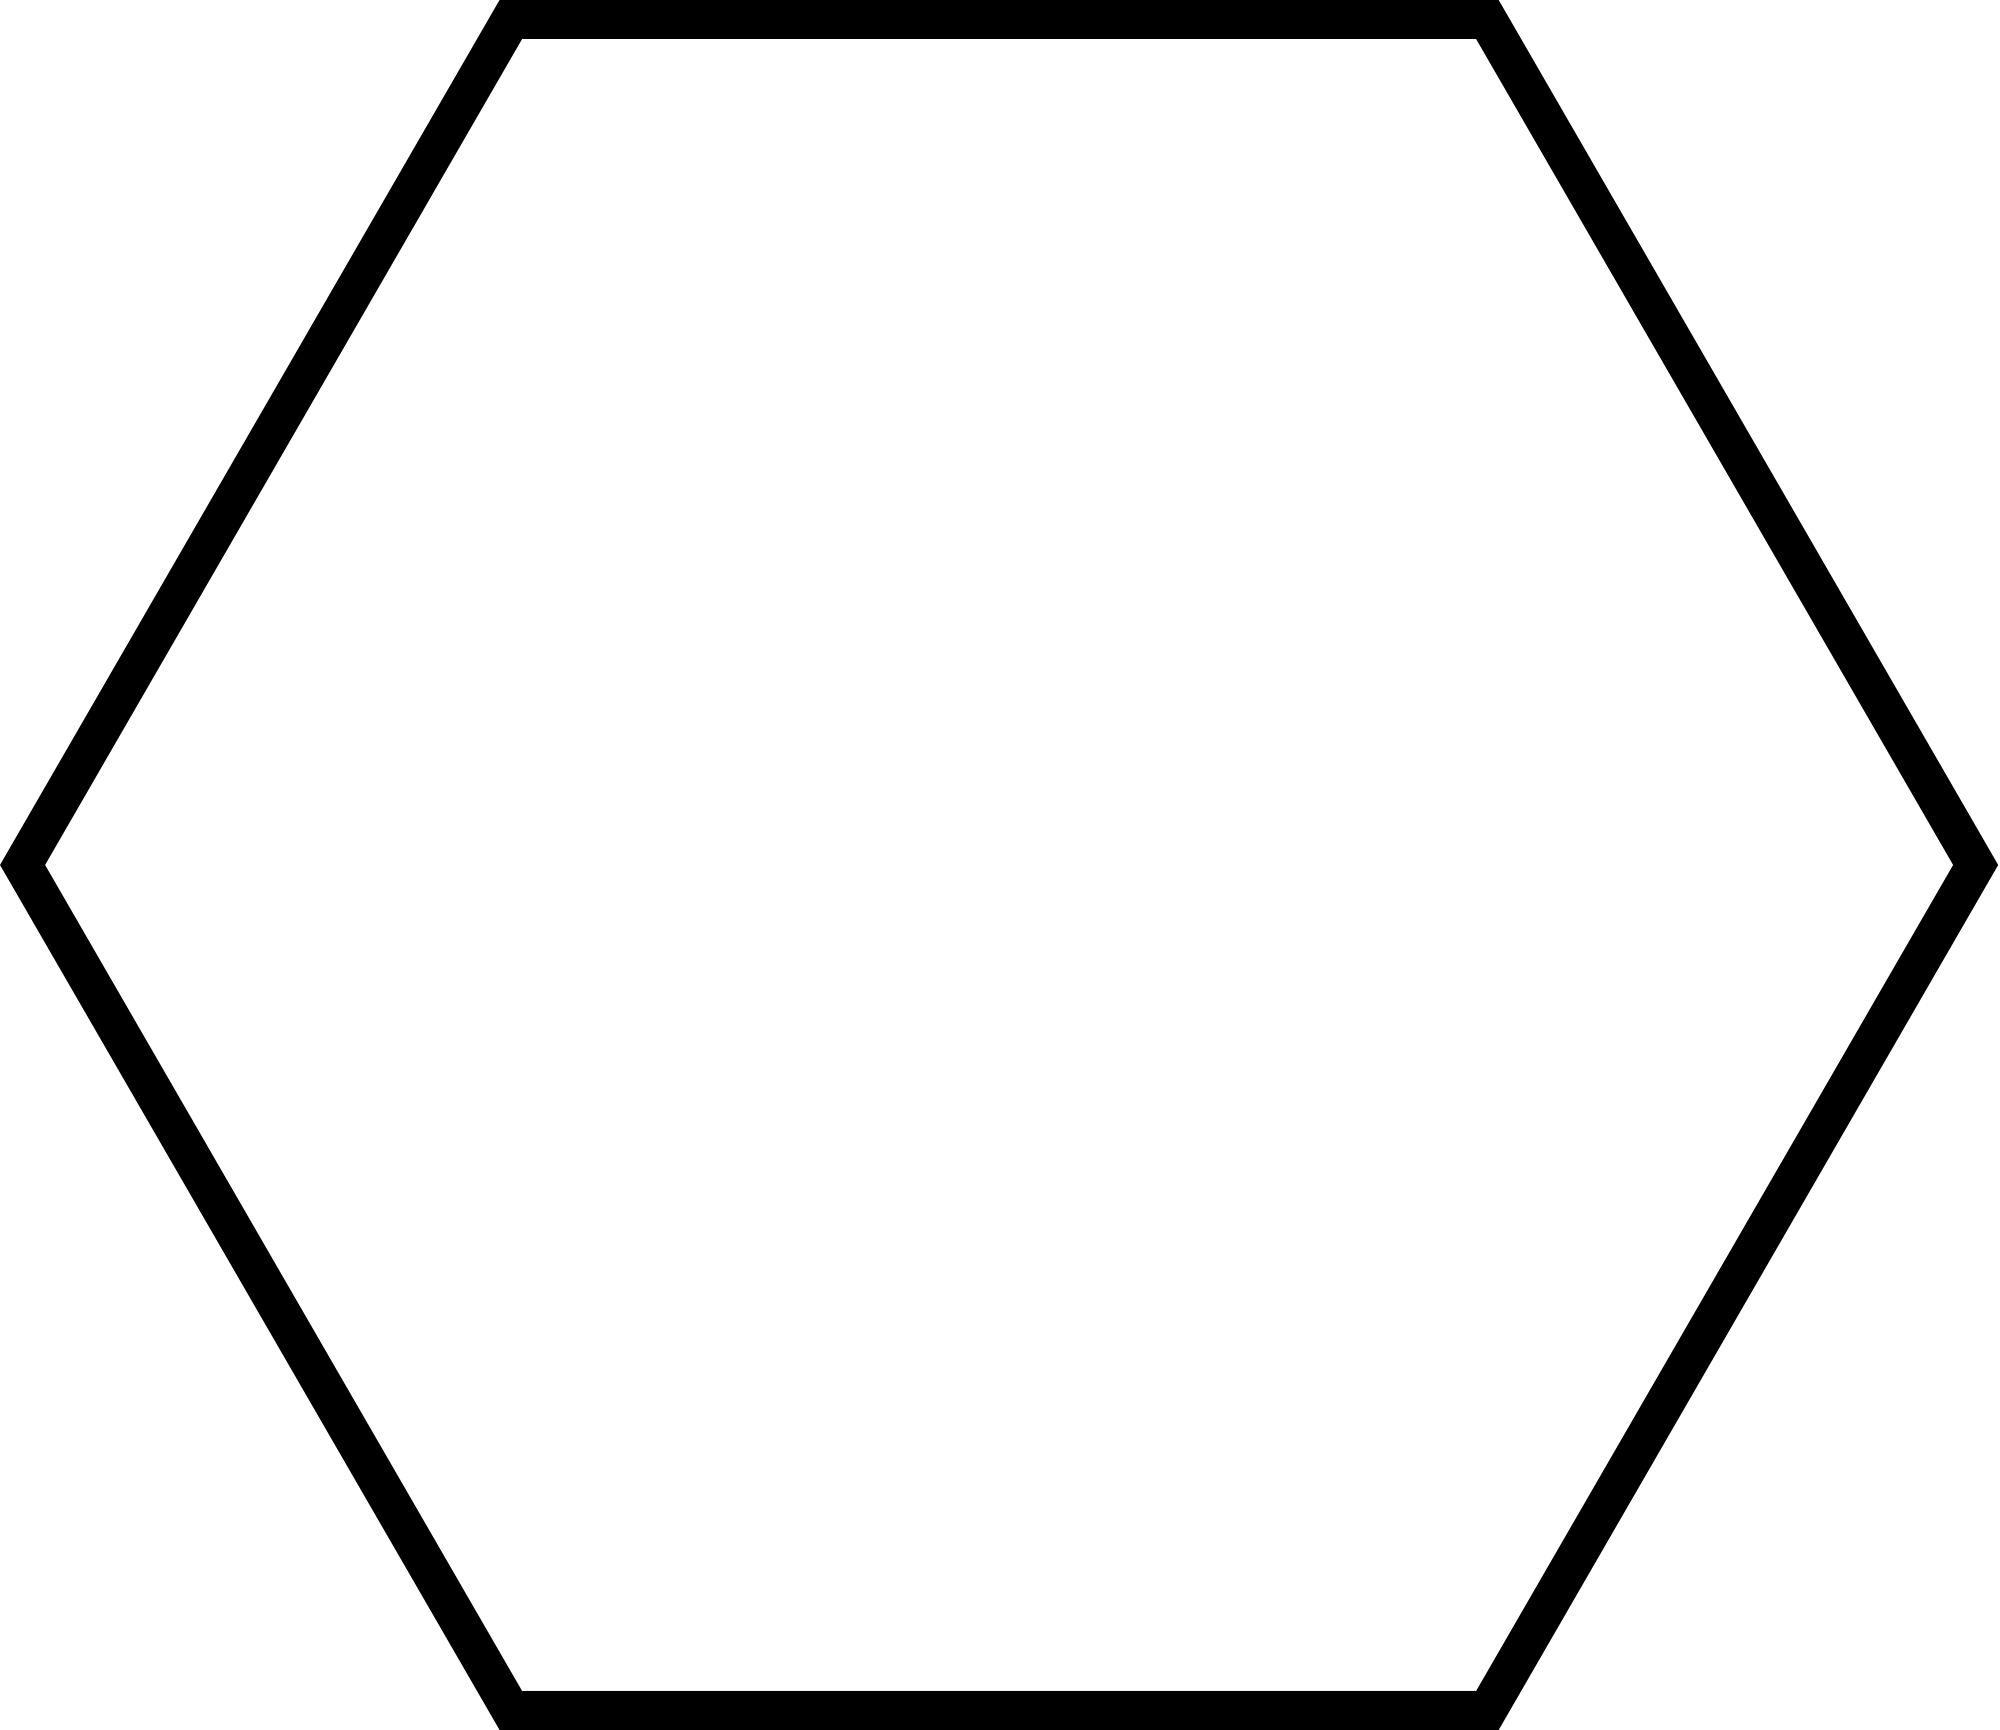 Рамка шестиугольник на прозрачном фоне фото